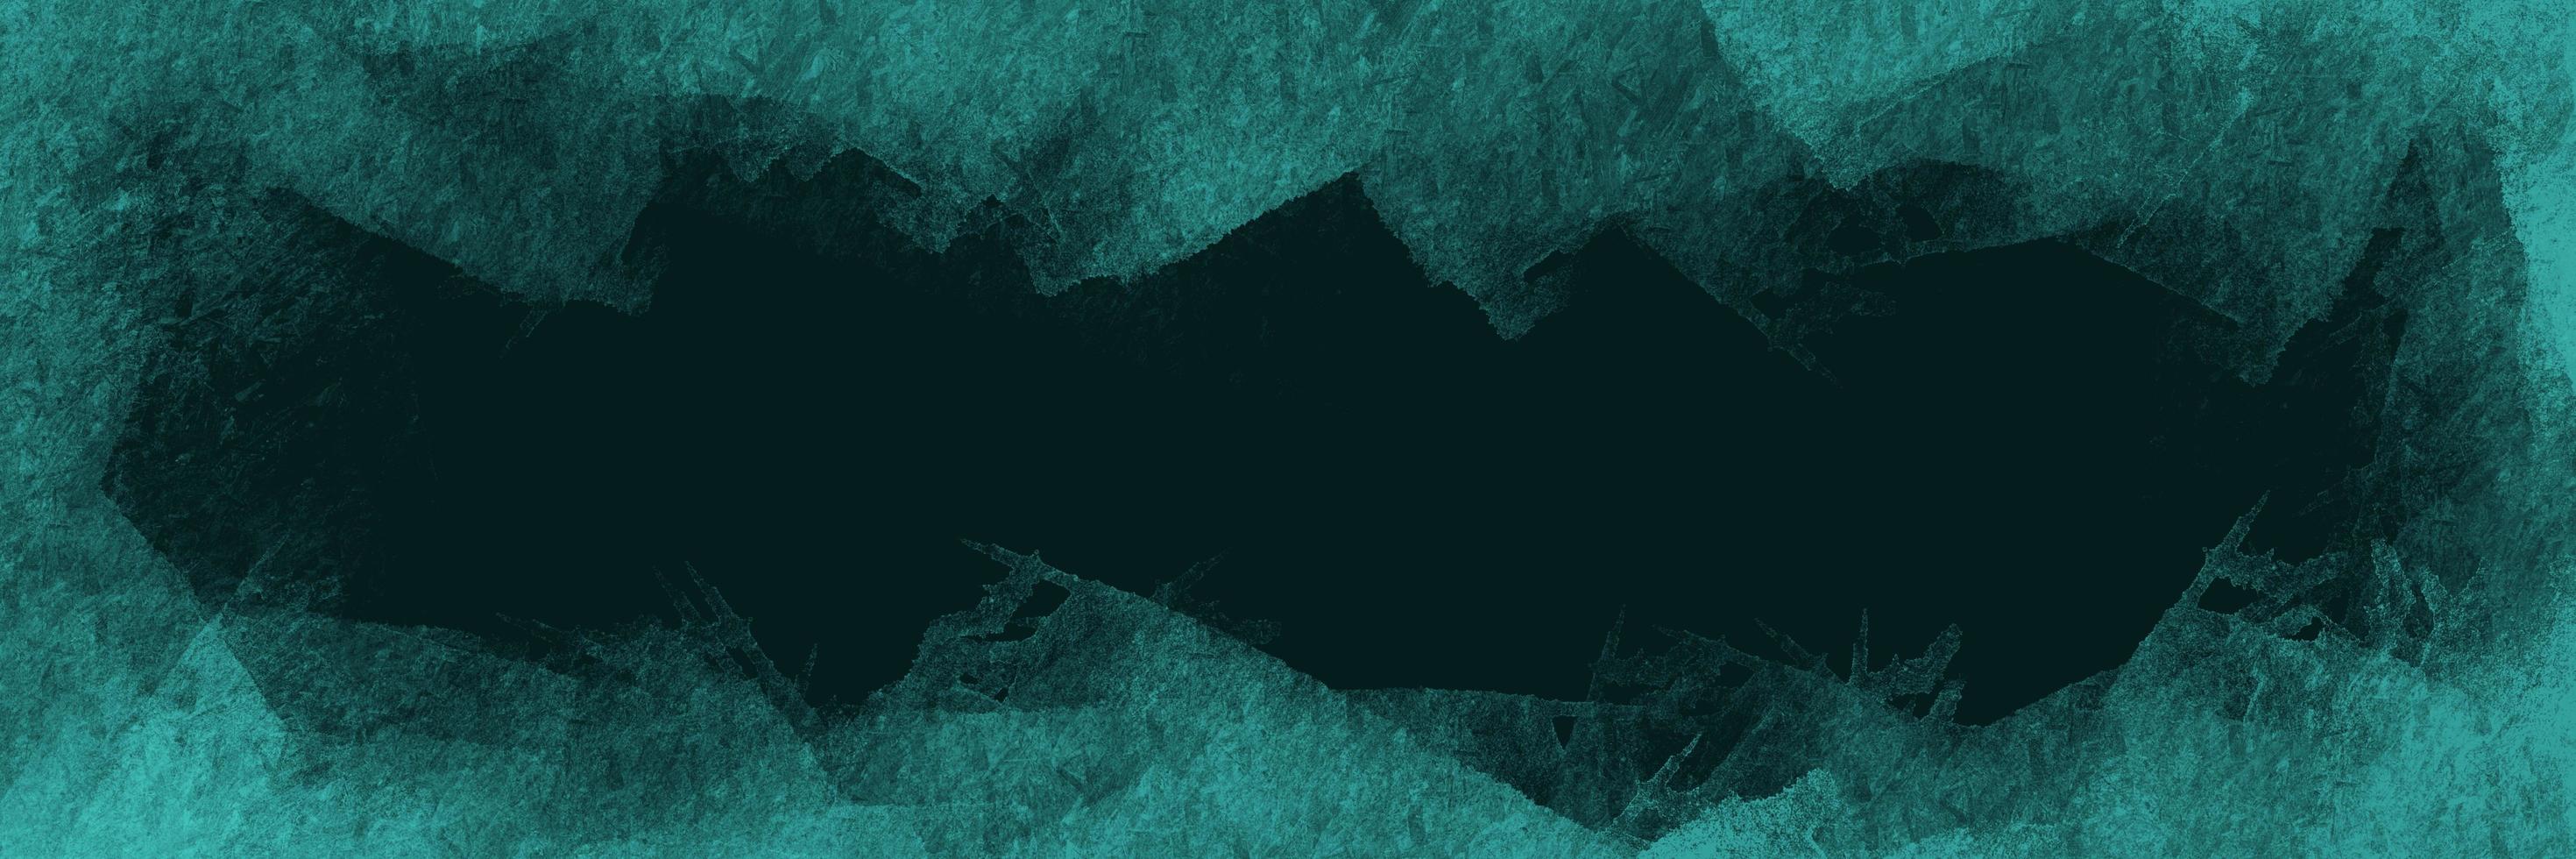 motif de fond abstrait ondulé de couleur bleu turquoise. élément de texture grunge coloré pour un design créatif. photo